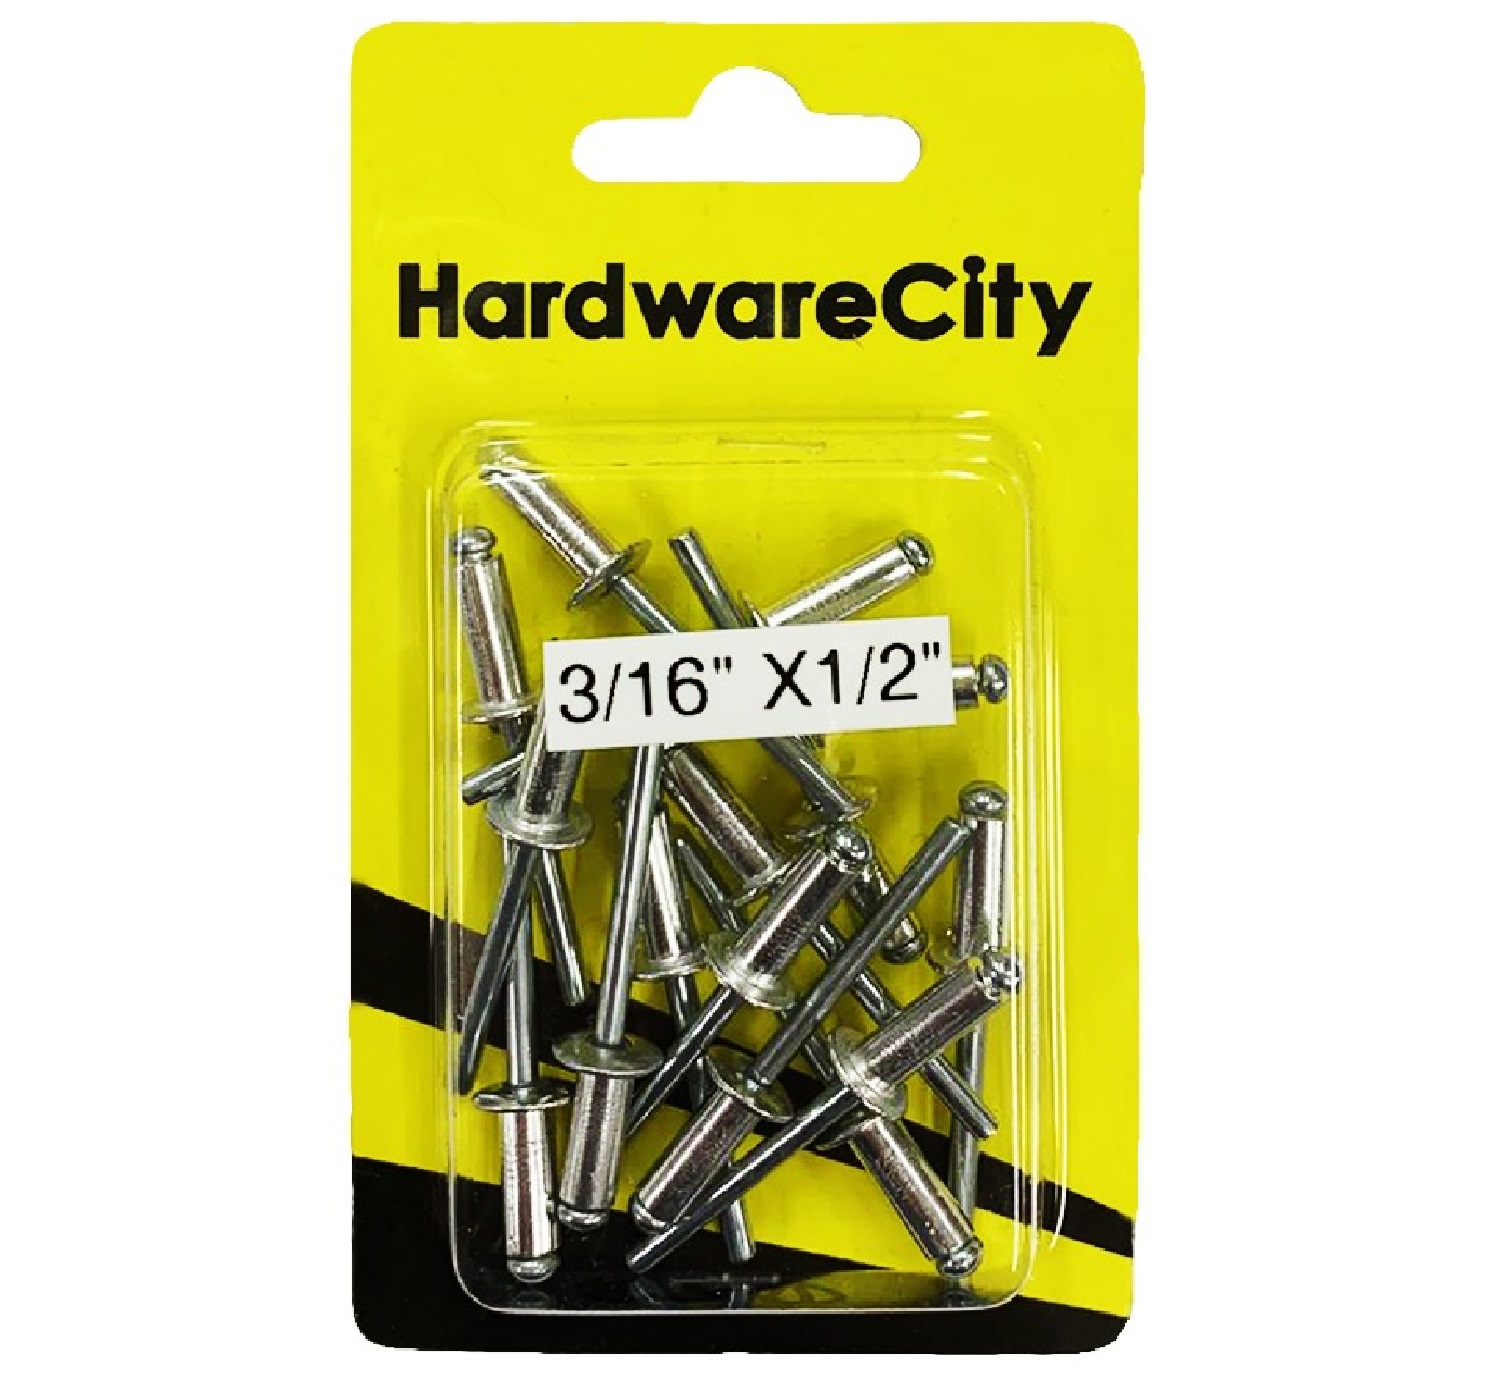 HardwareCity 3/16 X 1/2 Aluminium Rivets, 20PC/Pack